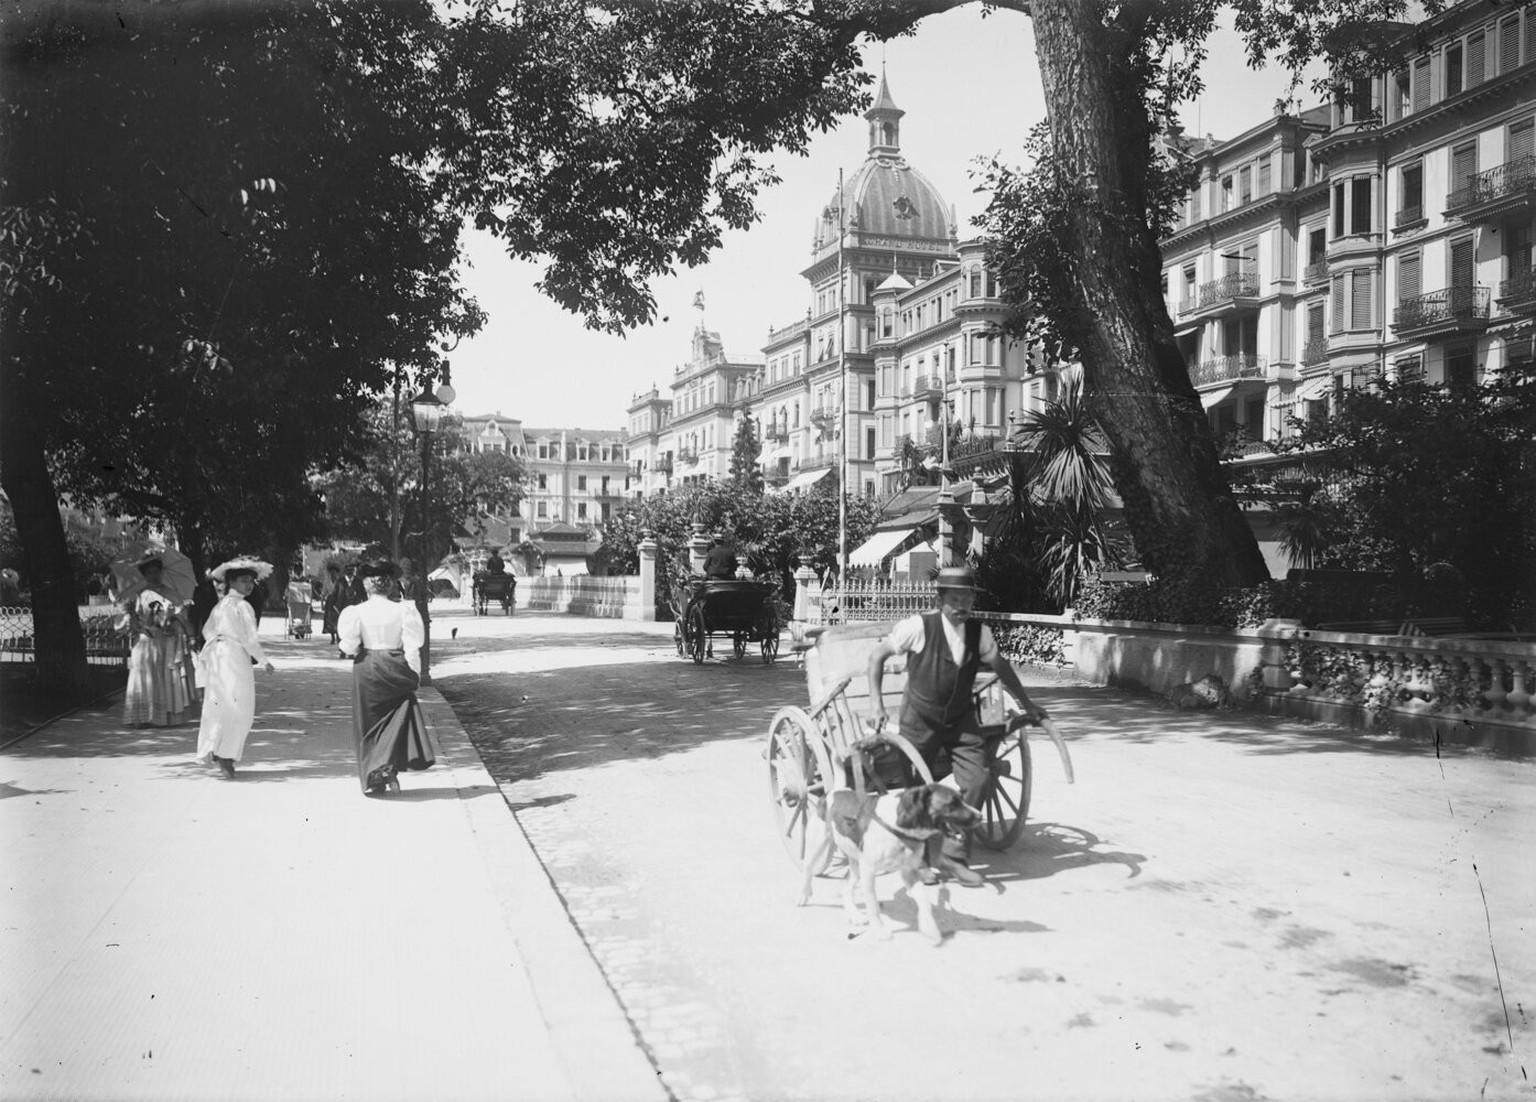 Das Grandhotel Victoria-Jungfrau in Interlaken, nachdem Davinet 1899 die früher separaten Hotels Victoria und Jungfrau durch einen Kuppelbau vereinte.